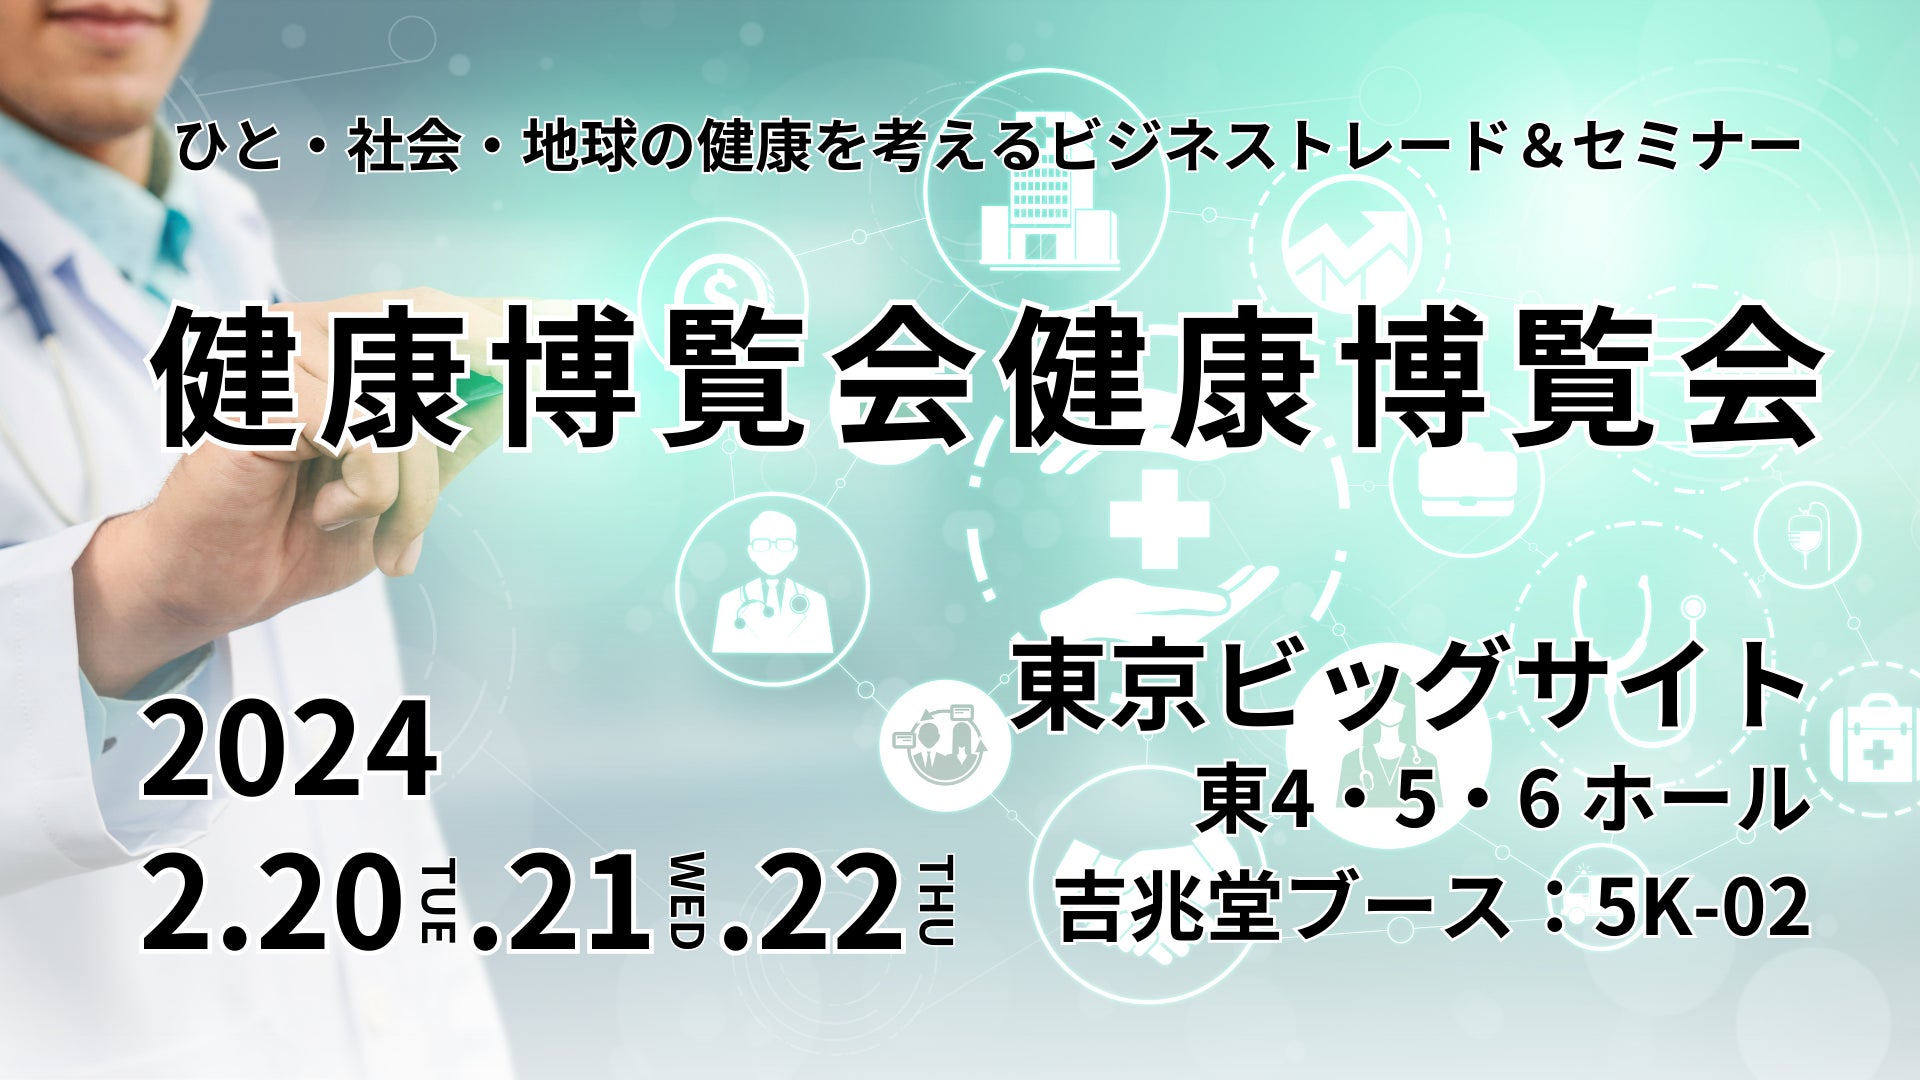 福岡老舗和菓子屋「如水庵」2024年2月16日 食べる和歌?!ネオ和菓子「うめみづき」新発売